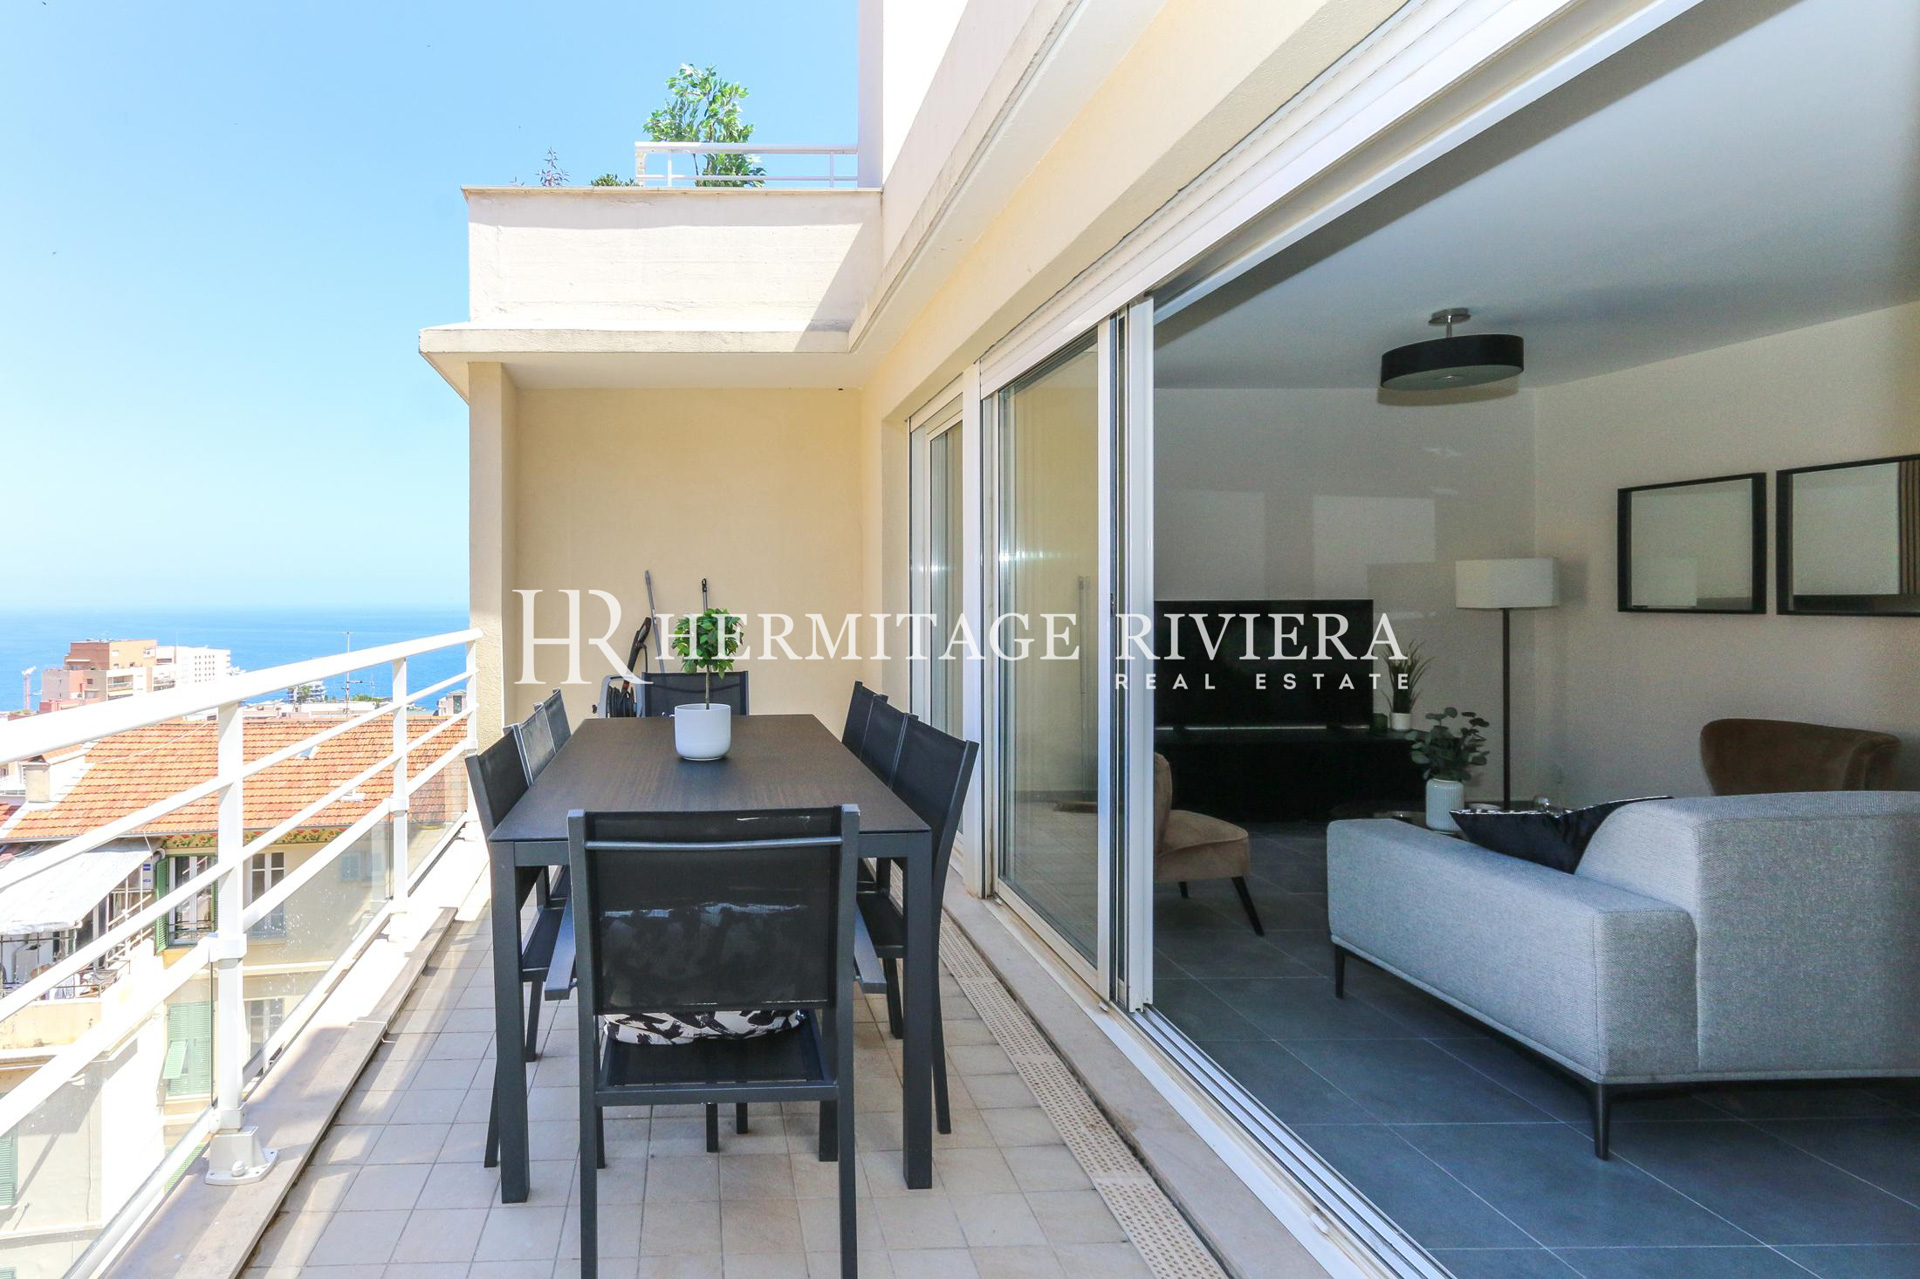 Penthouse-duplex renovated overlooking Monaco (image 9)